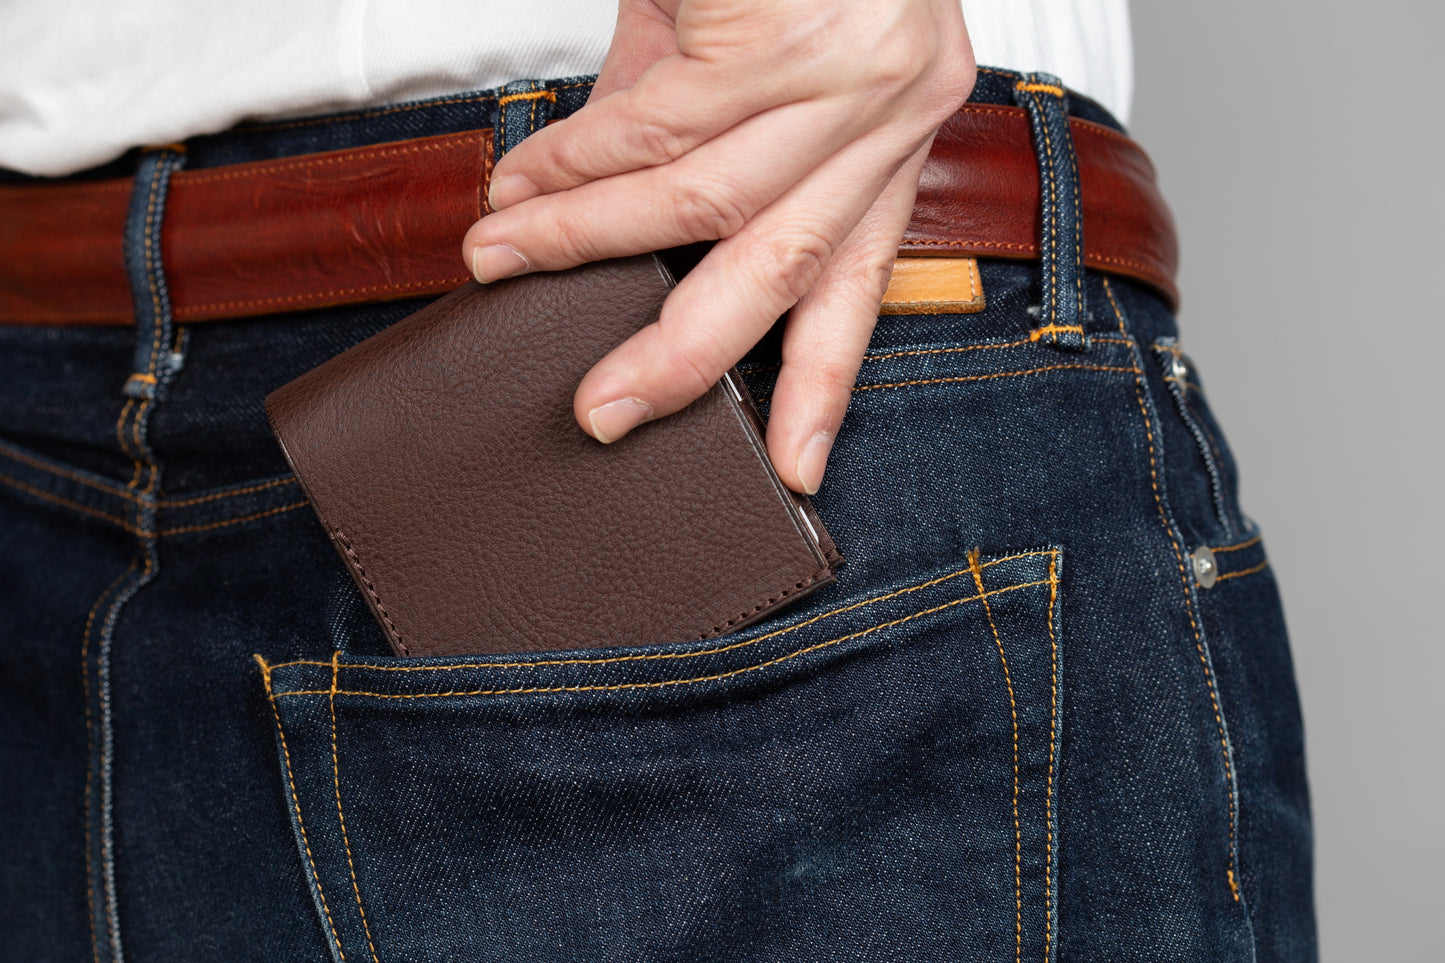 小さく薄い財布　dritto 2